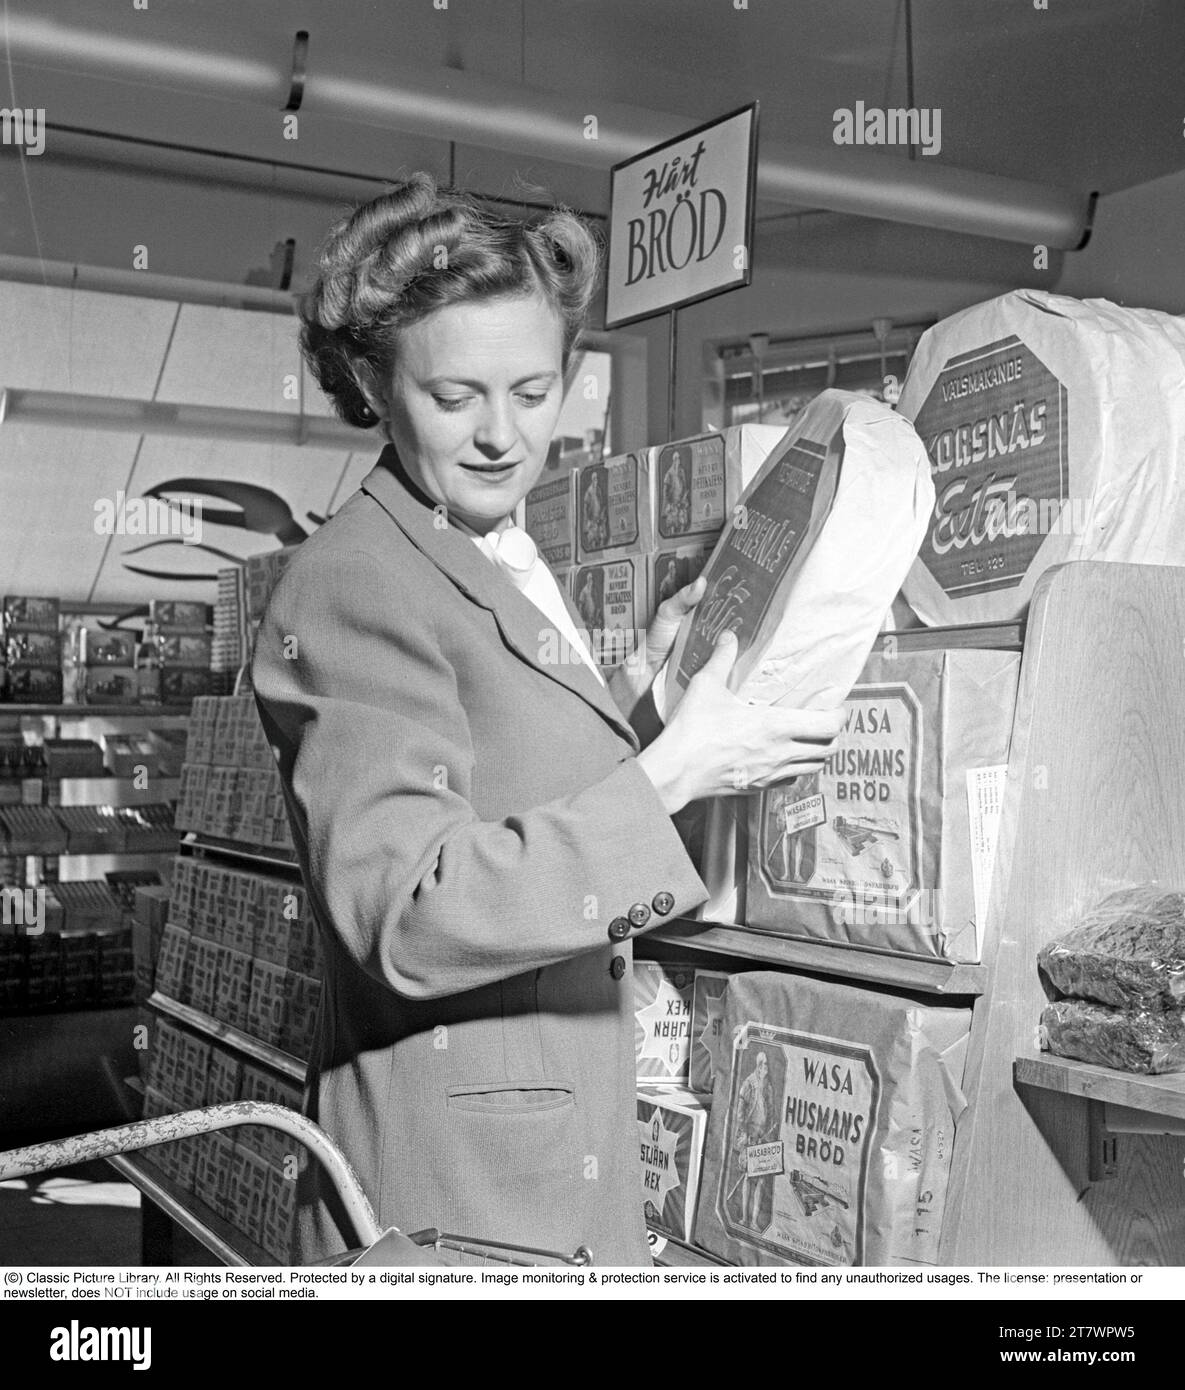 Shopping in den 1940er Jahren Eine Frau kauft in einem Selbstbedienungsladen ein. Sowohl die Idee des Self-Service als auch der Einkaufswagen kamen aus Amerika und zielten darauf ab, den Umsatz zu steigern. Der Kunde konnte sich die Lebensmittel aussuchen, in den Einkaufswagen legen und zur Kasse gehen. Zu dieser Zeit wurde diese Art des modernen Einkaufs in Schweden neu eingeführt. 1949. Kristoffersson Ref. AS47-3 Stockfoto